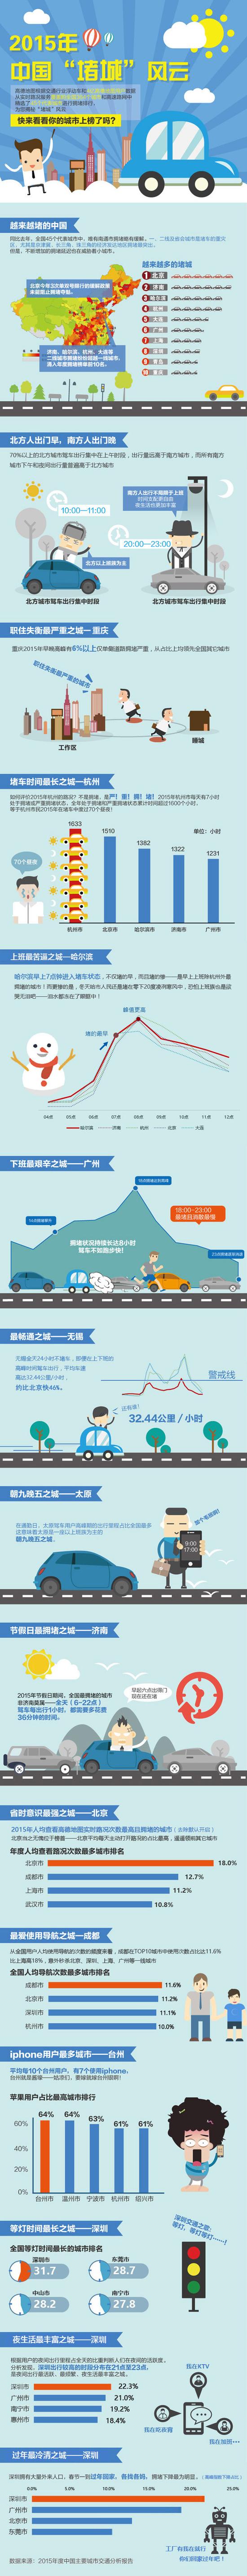 高德地图发布《2015年度中国主要城市交通分析报告》